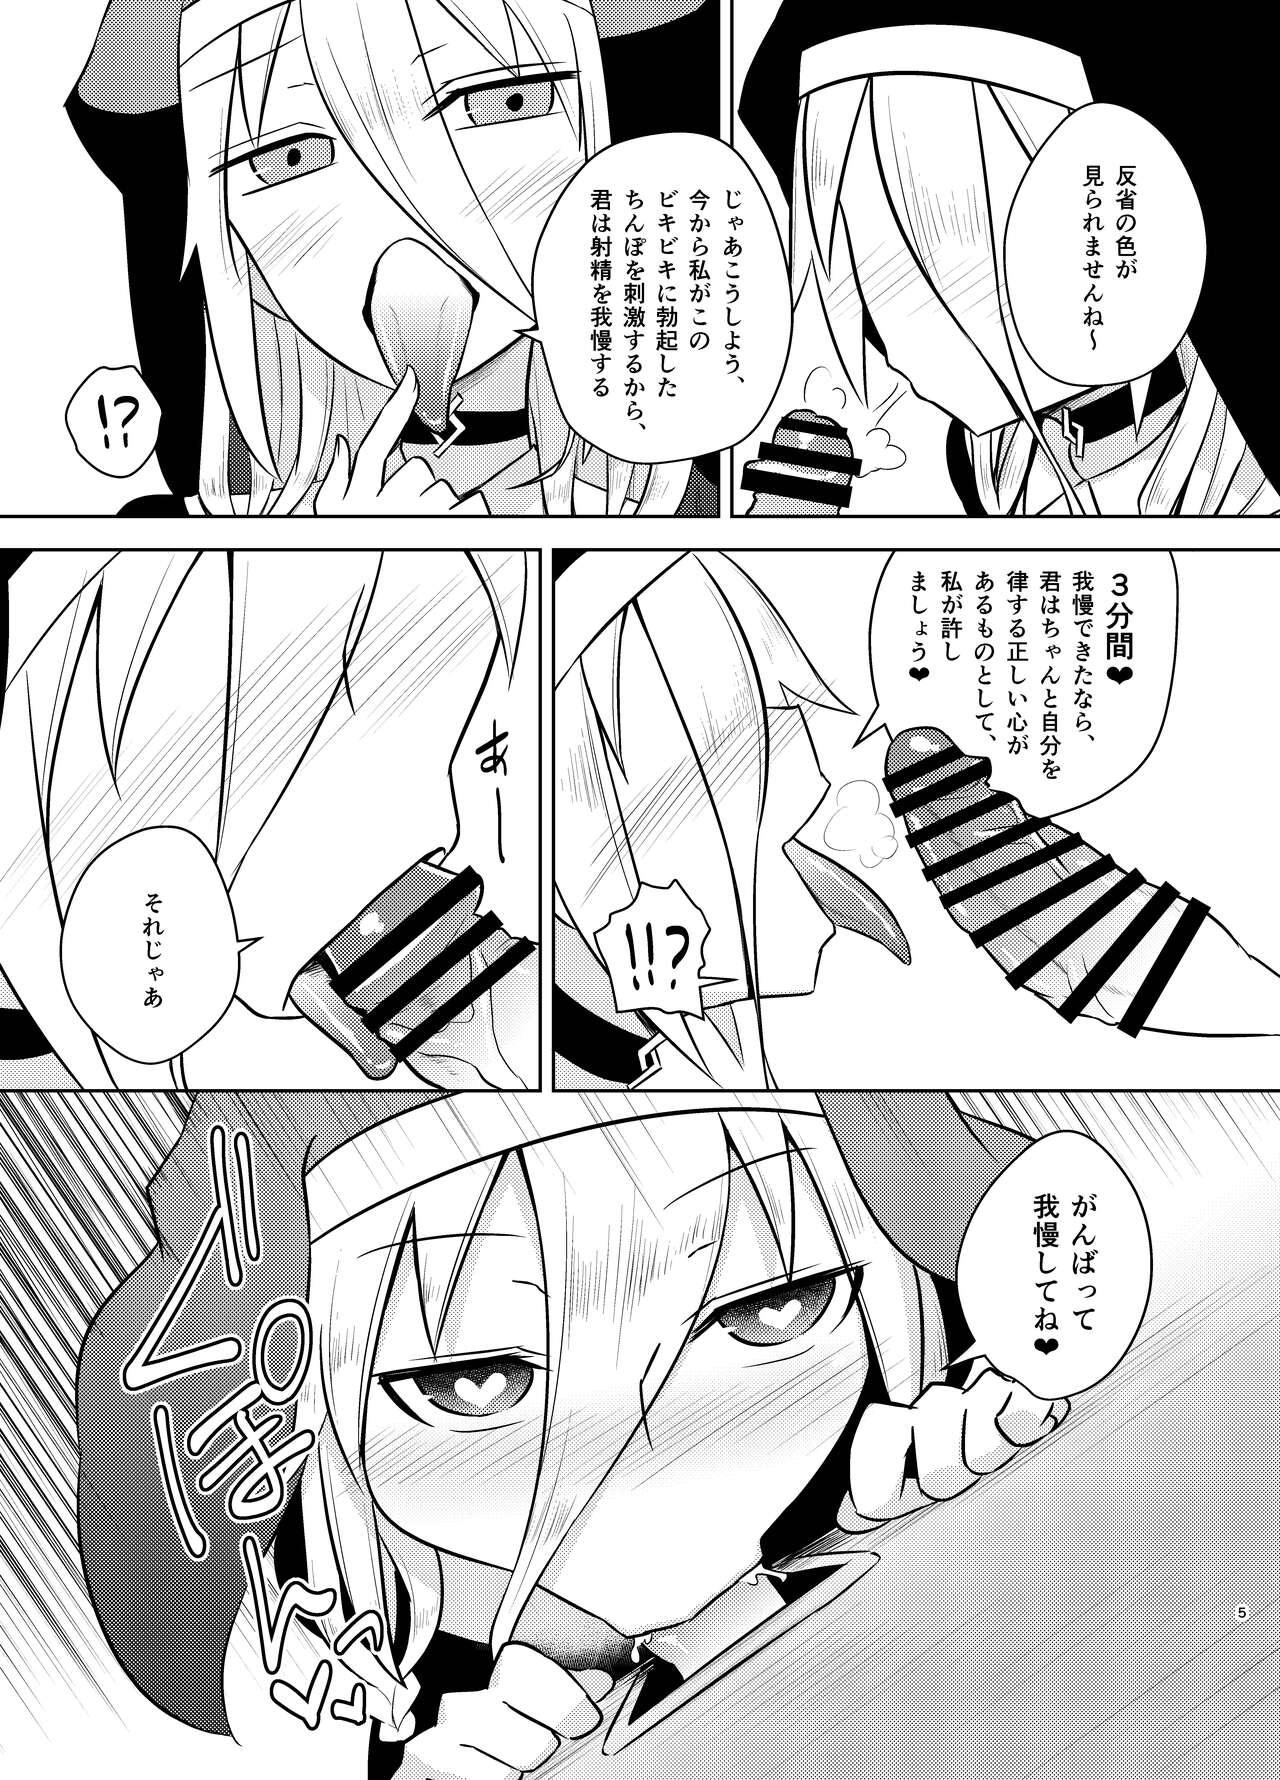 Gaping Sister IA & ONE to Himitsu no Zangeshitsu - Vocaloid 18yearsold - Page 5